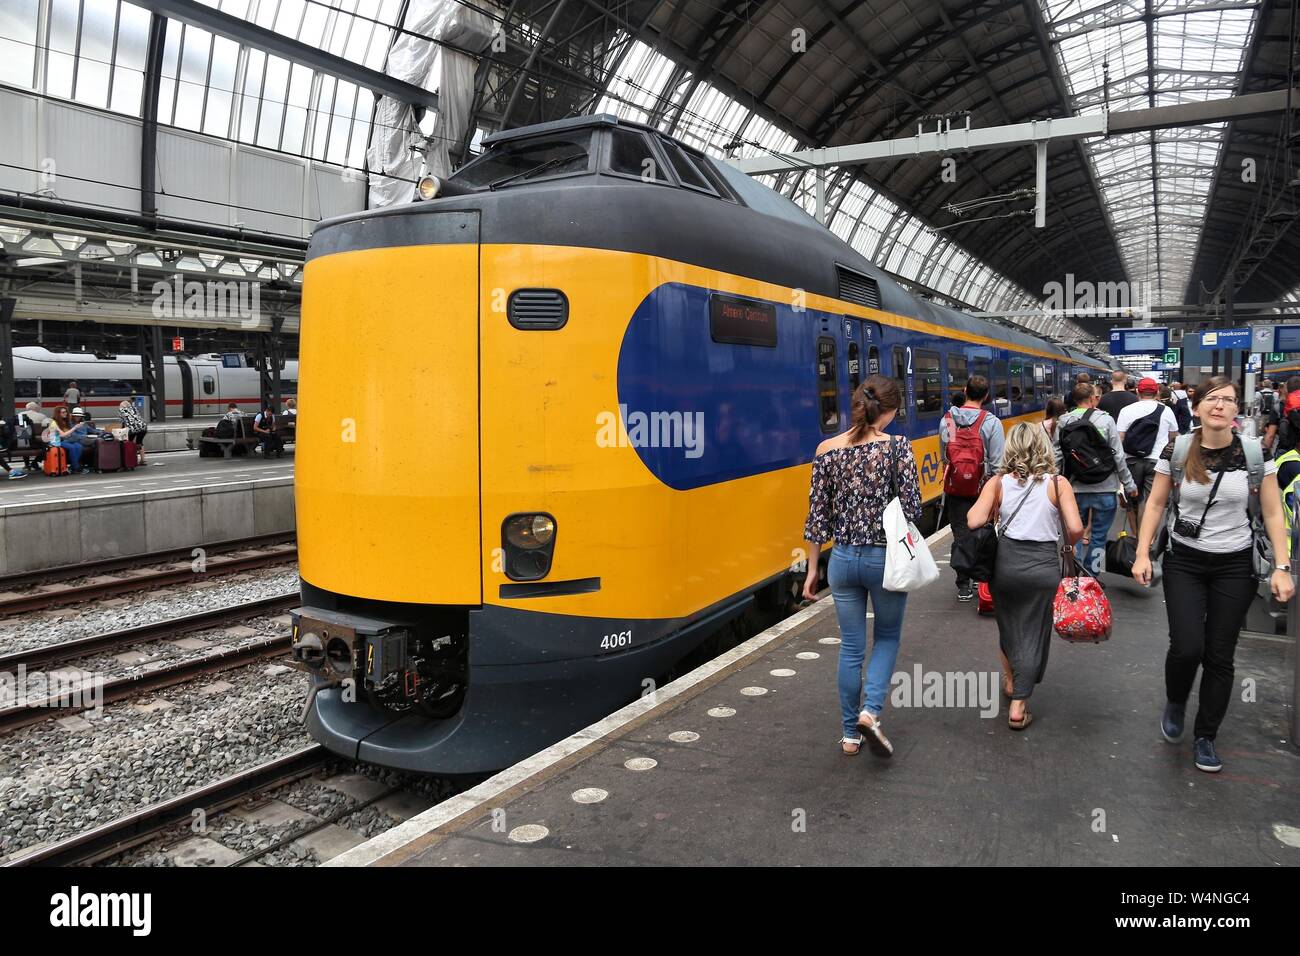 Nederlandse spoorwegen -Fotos und -Bildmaterial in hoher Auflösung – Alamy